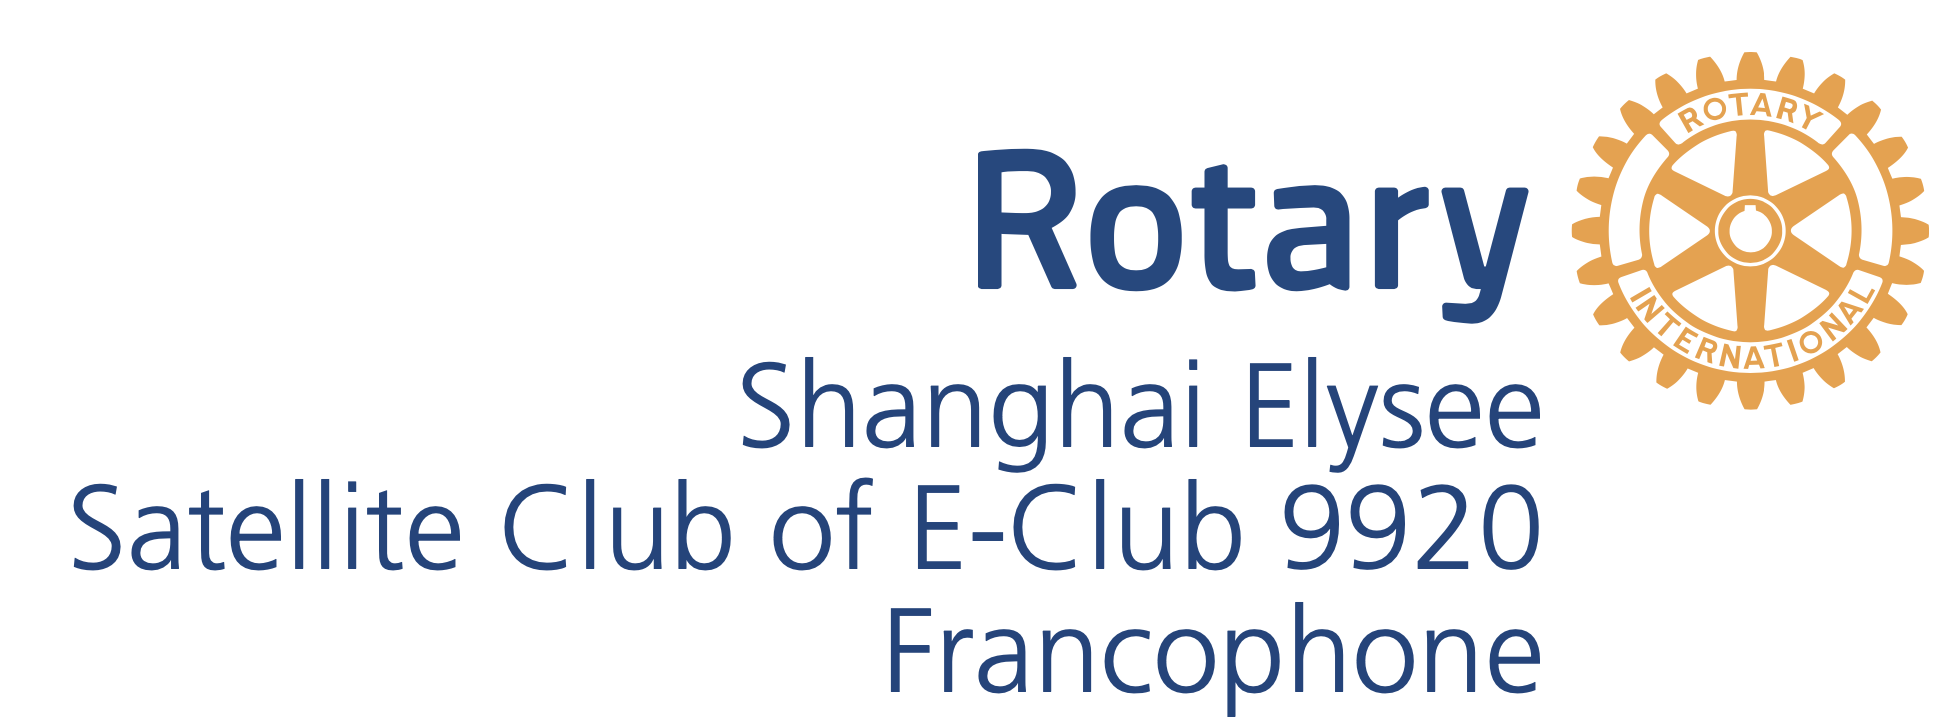 Rotary Shanghai Élysée